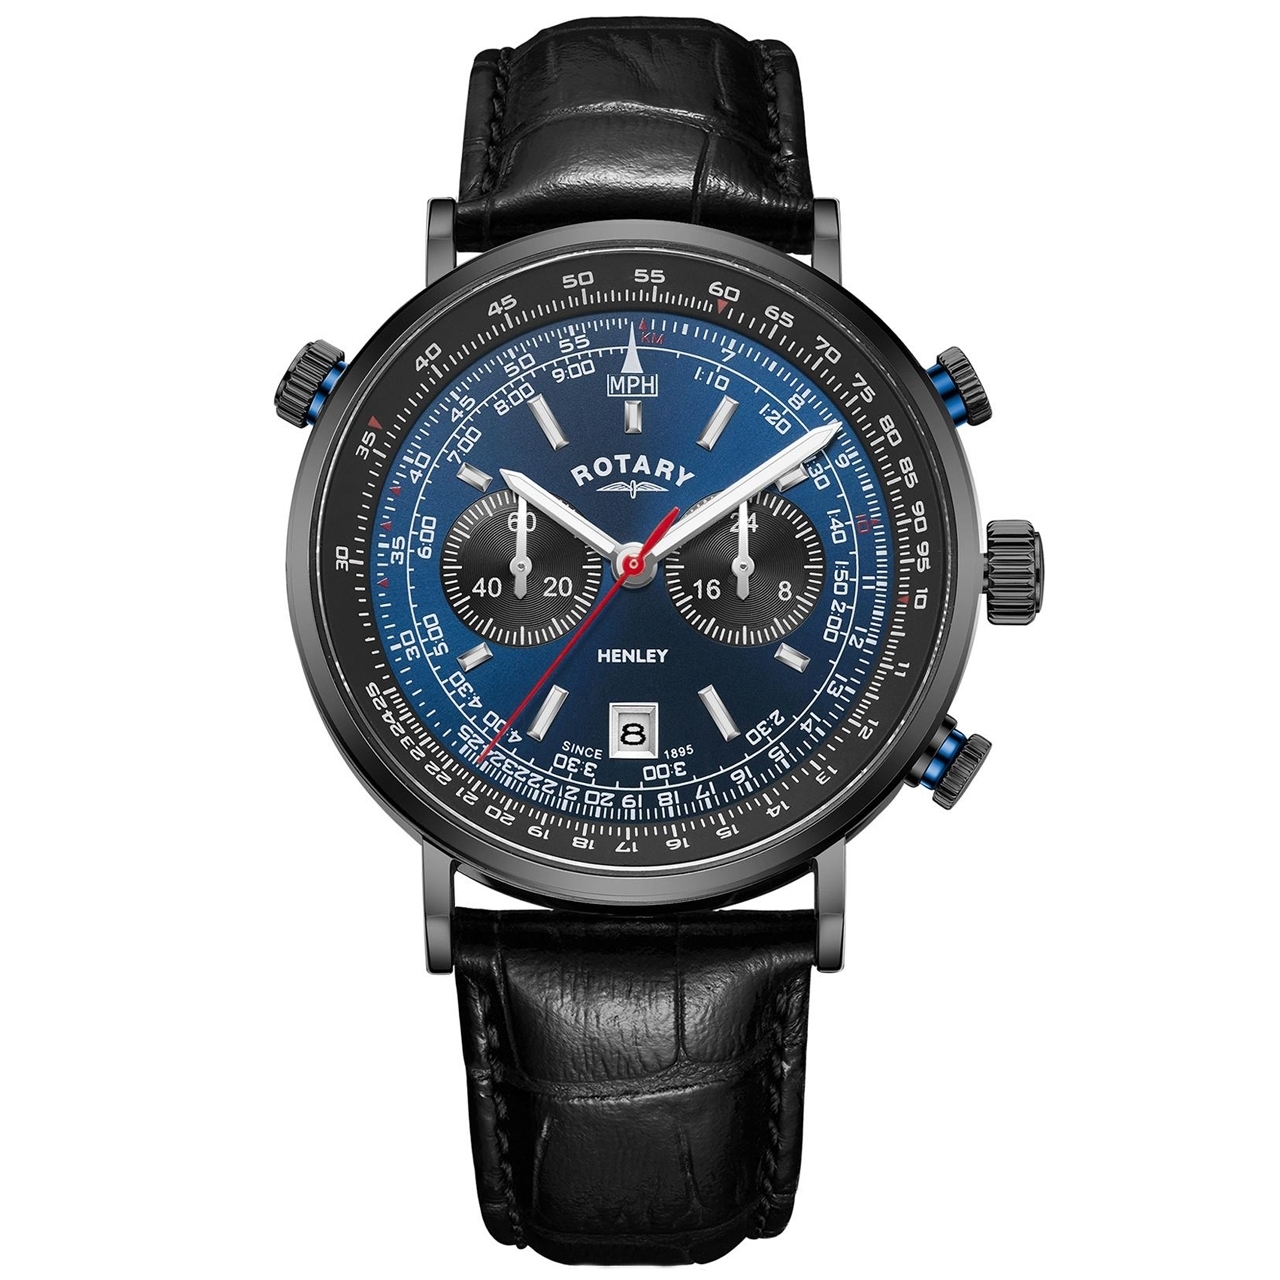 ساعت مچی عقربه ای مردانه کلاسیک برند روتاری مدل GS05238/05